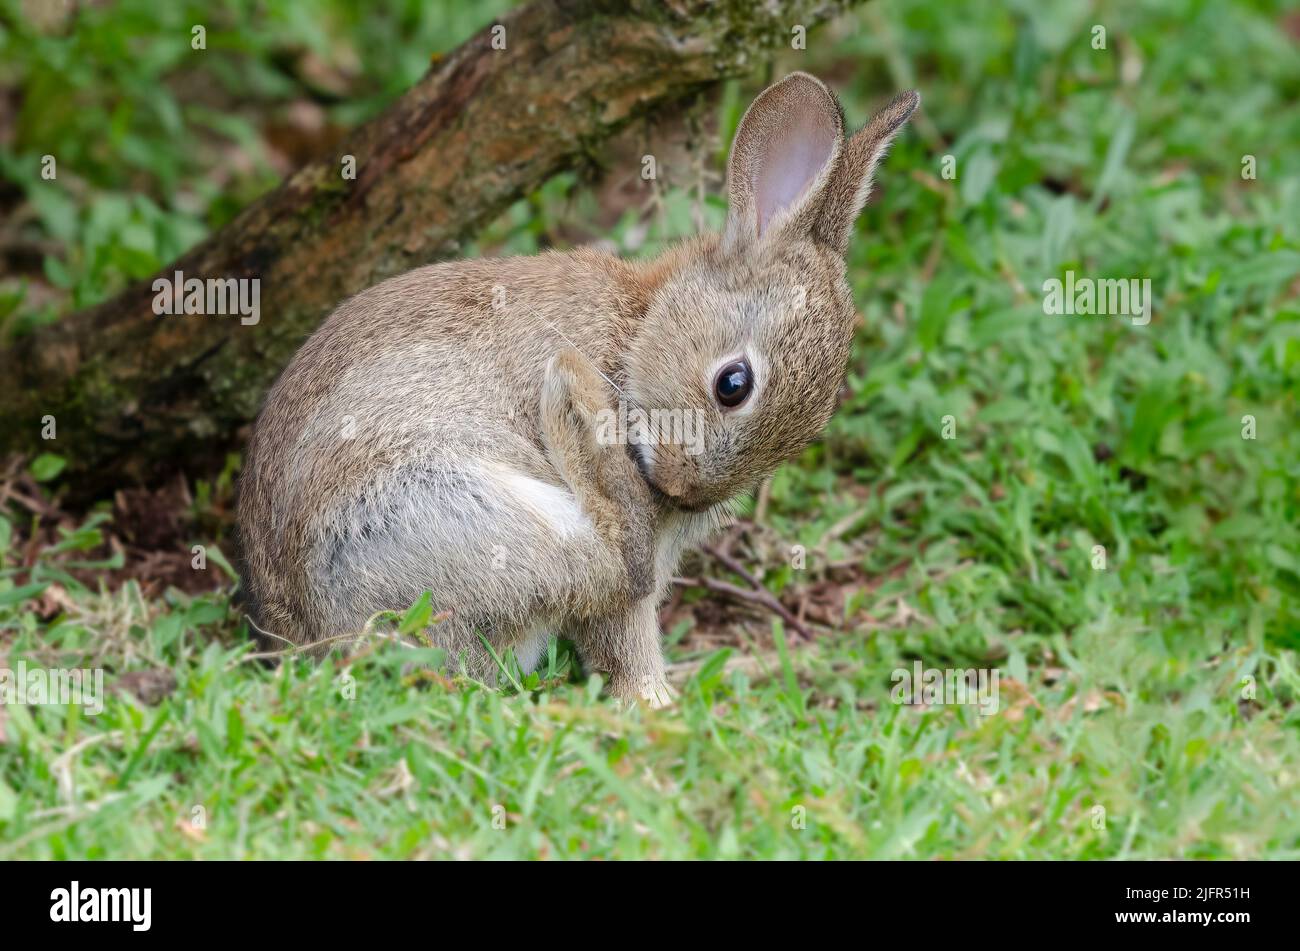 Un conejo salvaje joven está sentado en la hierba. Tiene su pierna trasera levantada mientras mira hacia abajo para inspeccionar la pata Foto de stock